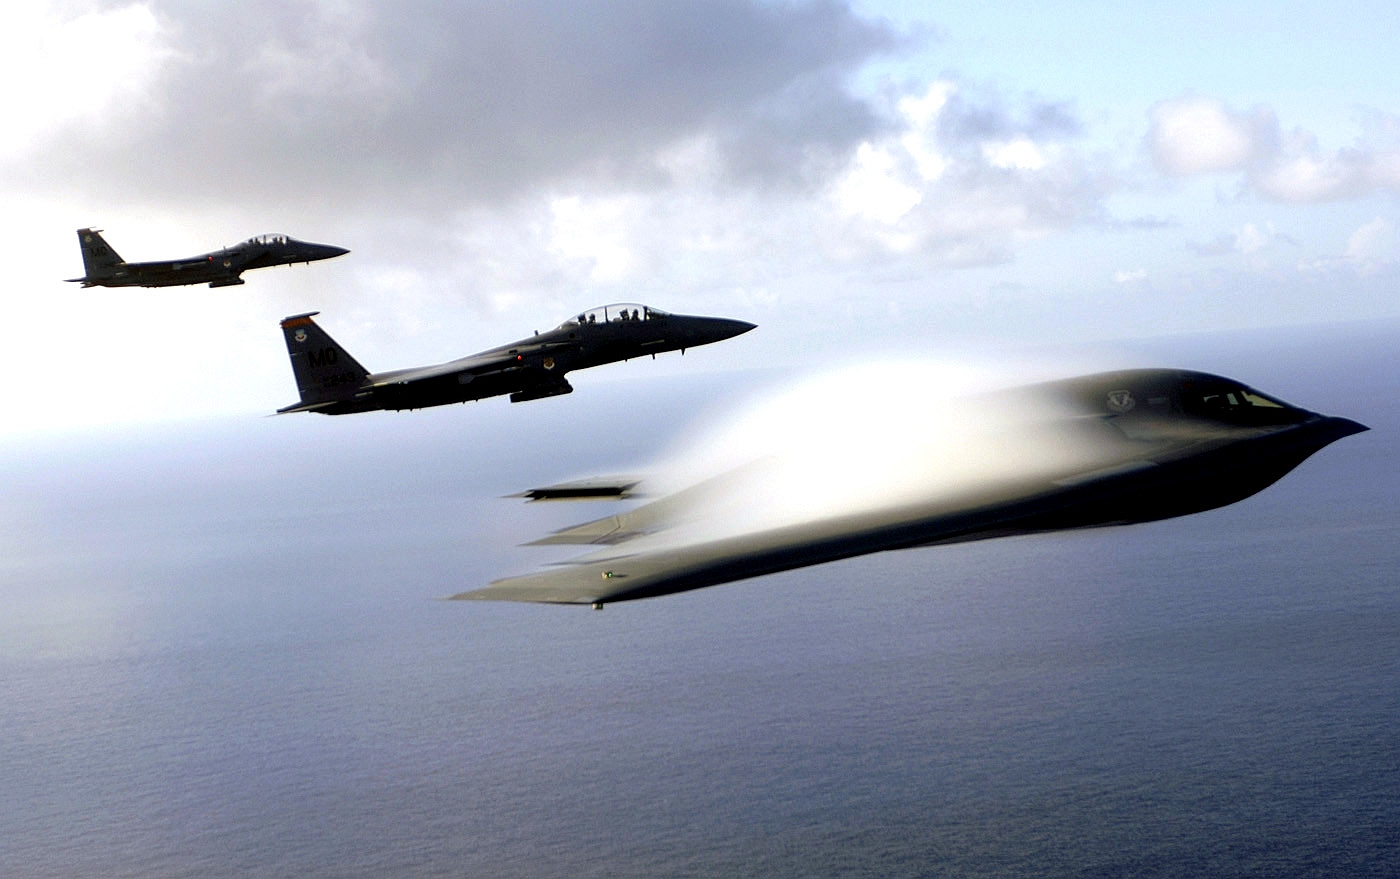 gpw-20050822-fullsize-UnitedStatesAirForce-060707-F-3961R-003-Pacific-Ocean-B-2-Spirit-stealth-bomber-F-15E-Strike-Eagle-July-2005-Guam.jpg